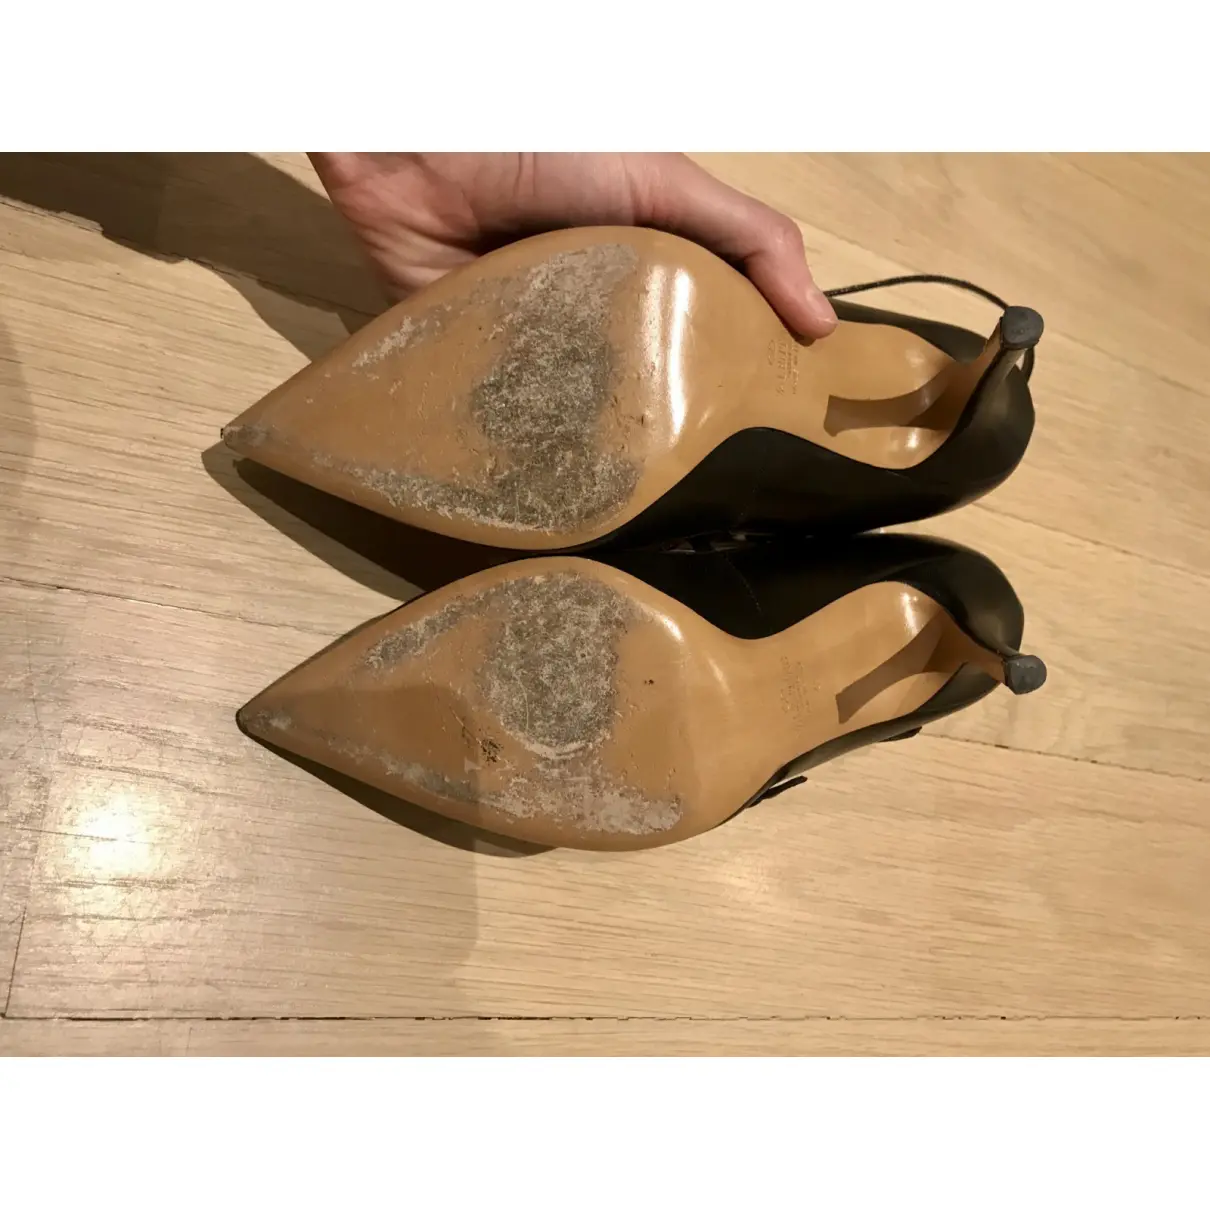 Rockstud leather heels Valentino Garavani